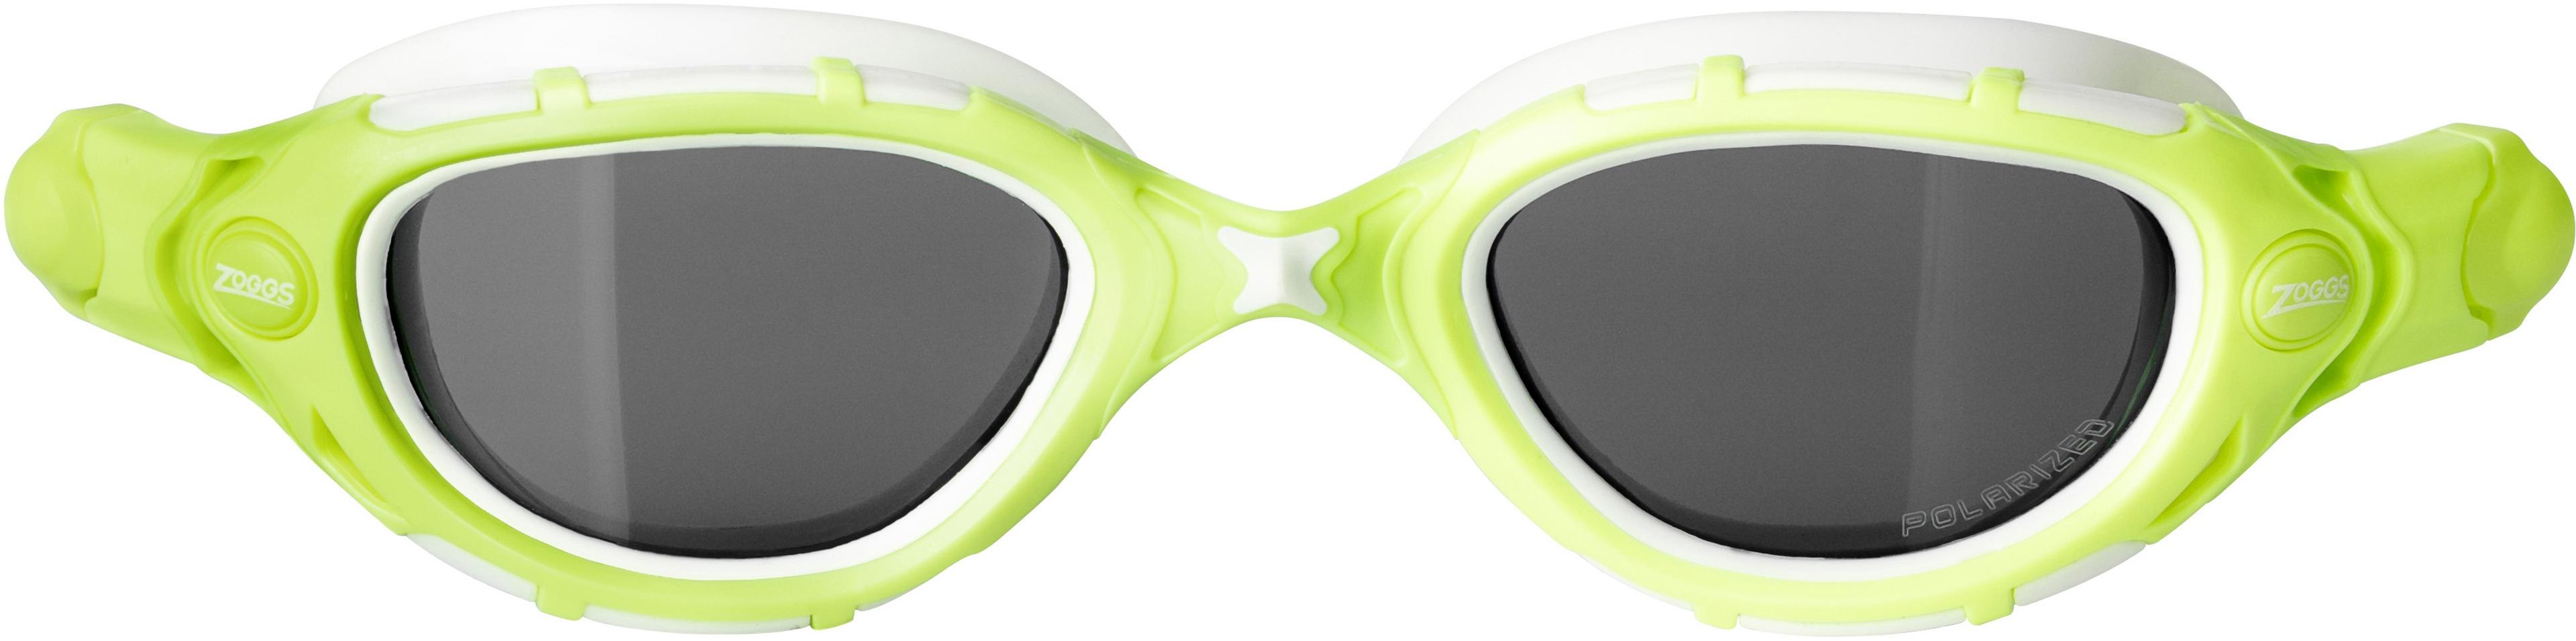 Zoggs Predator Flex Reactor Swimming Goggles - Green